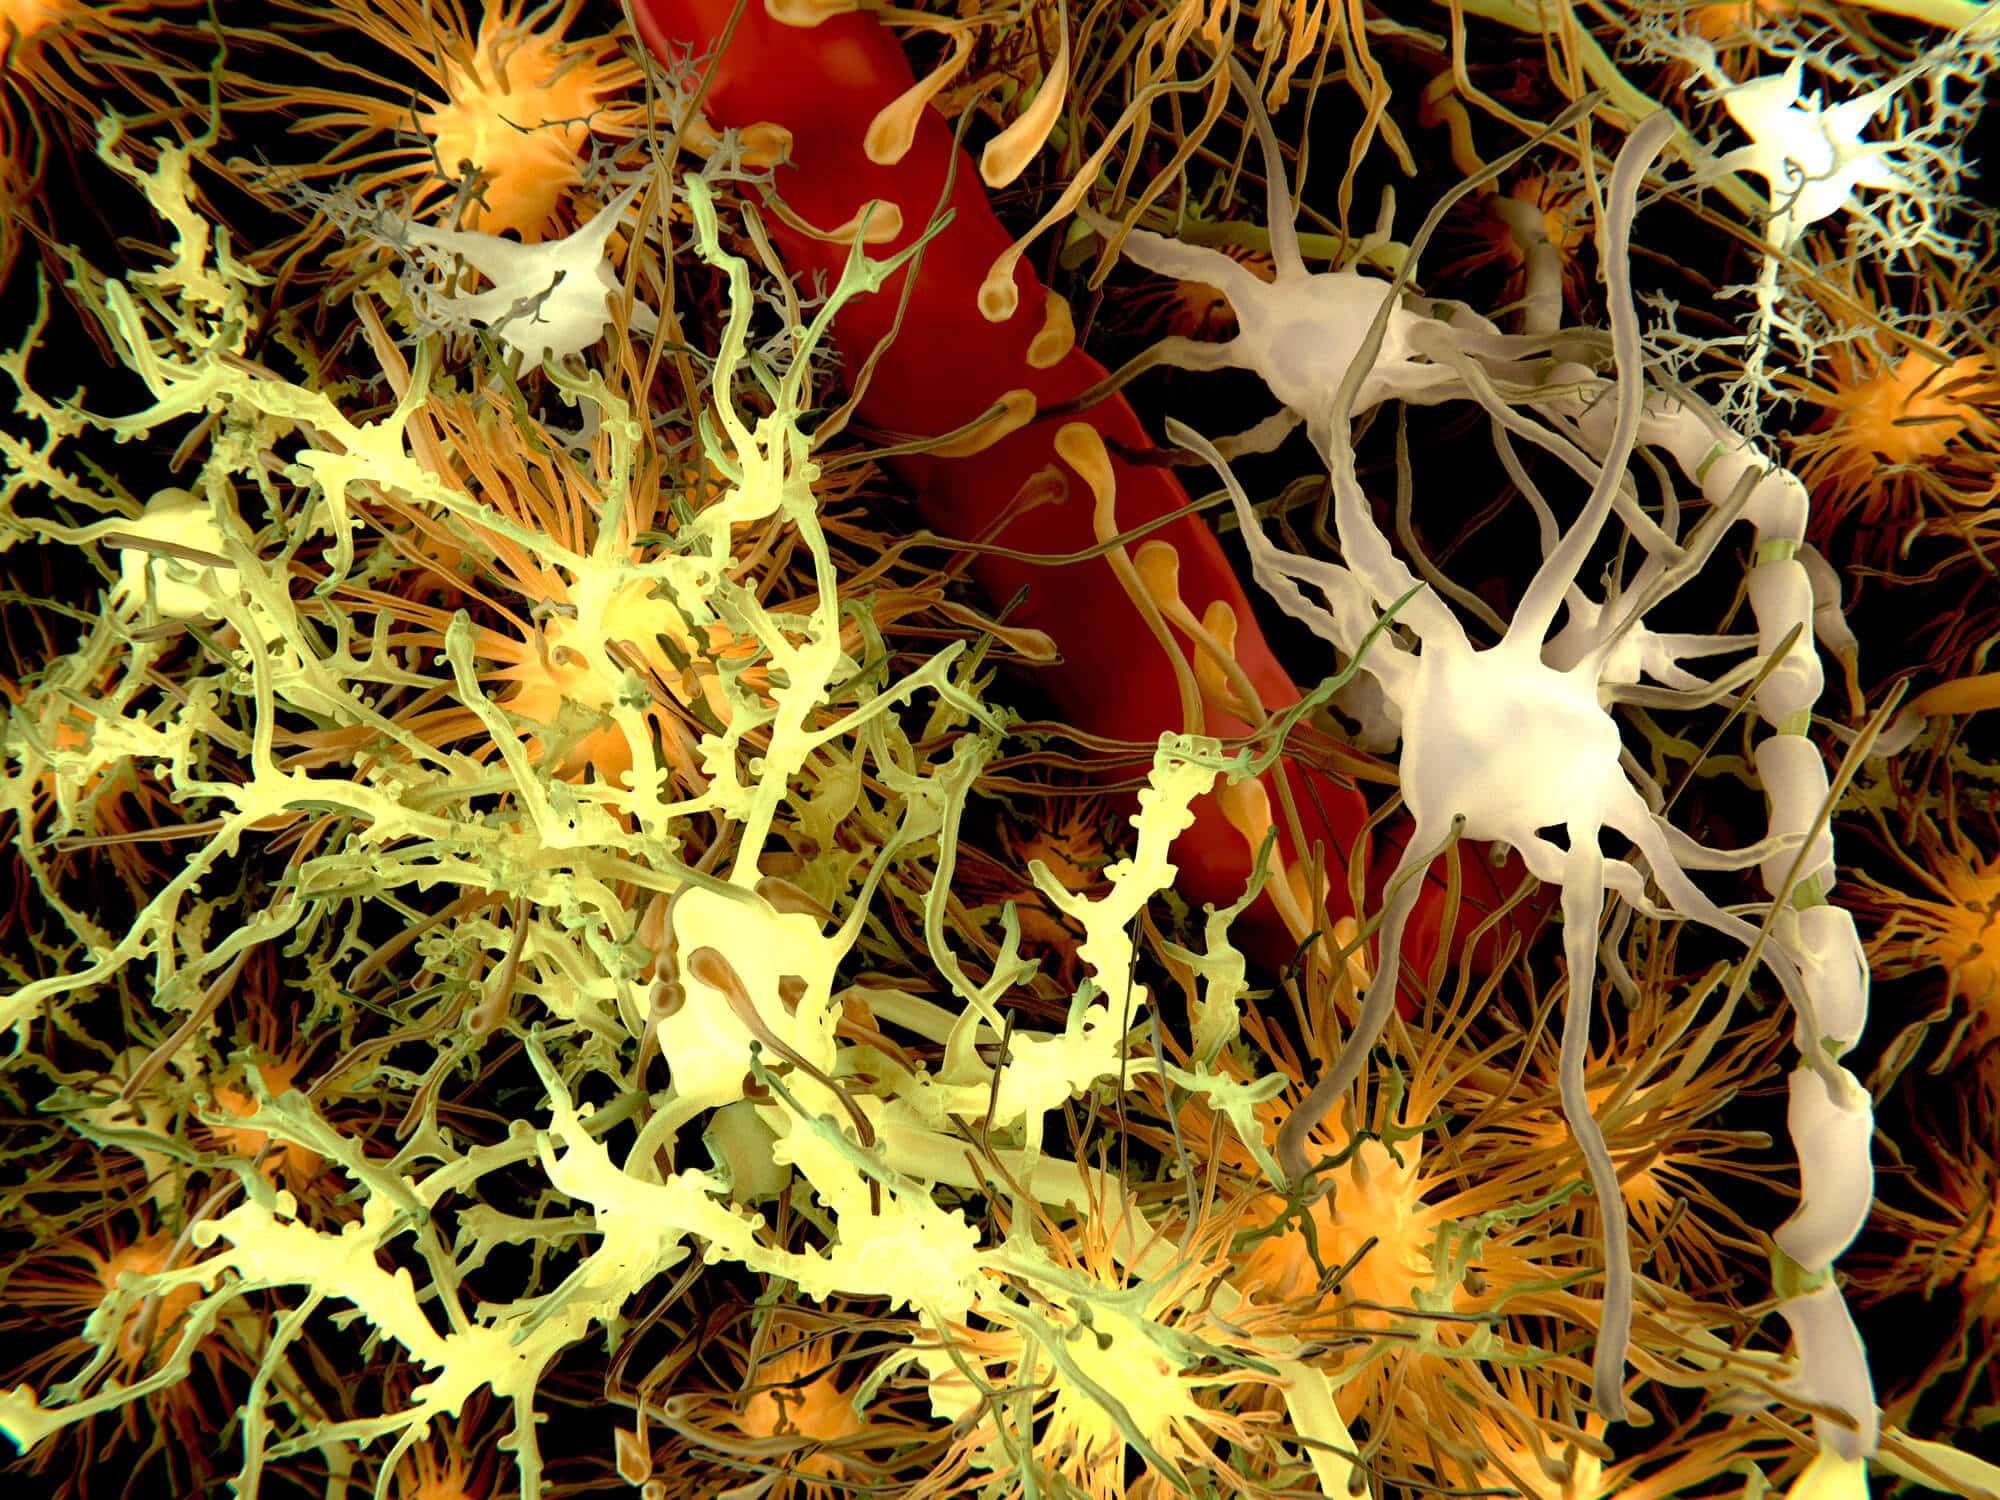 أنواع الخلايا المختلفة في الدماغ. الرسم التوضيحي: موقع Depositphotos.com